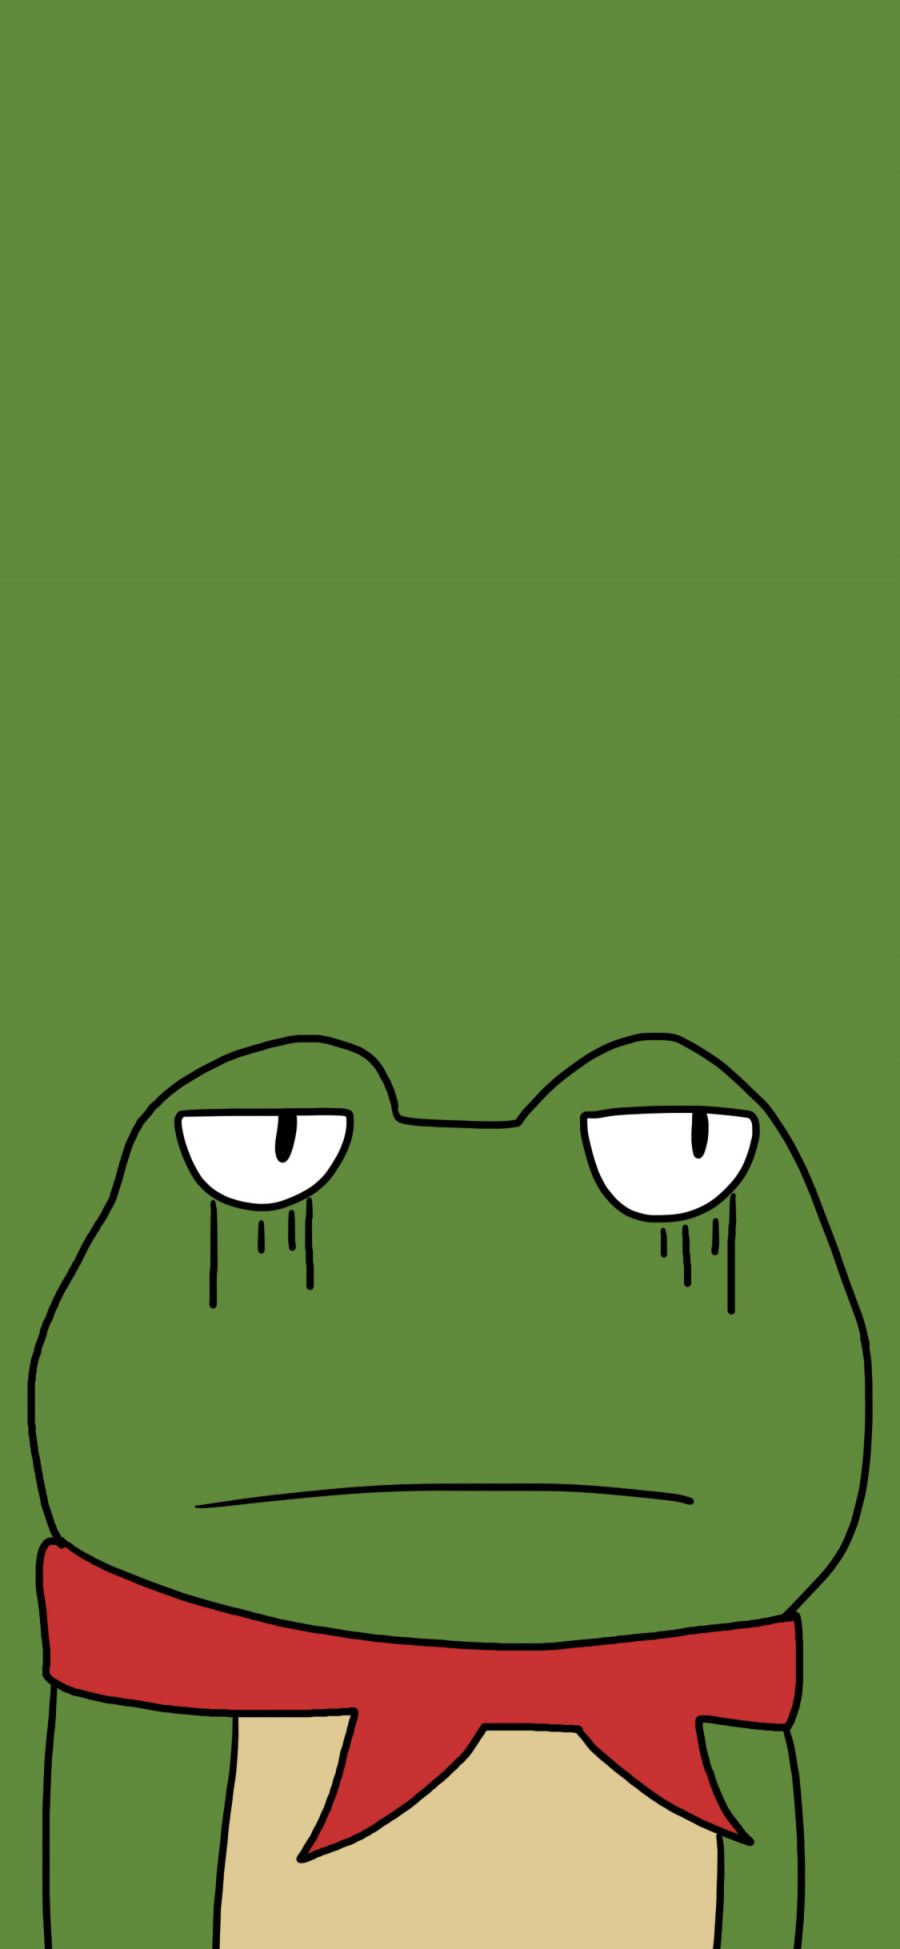 [2436×1125]青蛙 动画 无语 绿色 苹果手机动漫壁纸图片